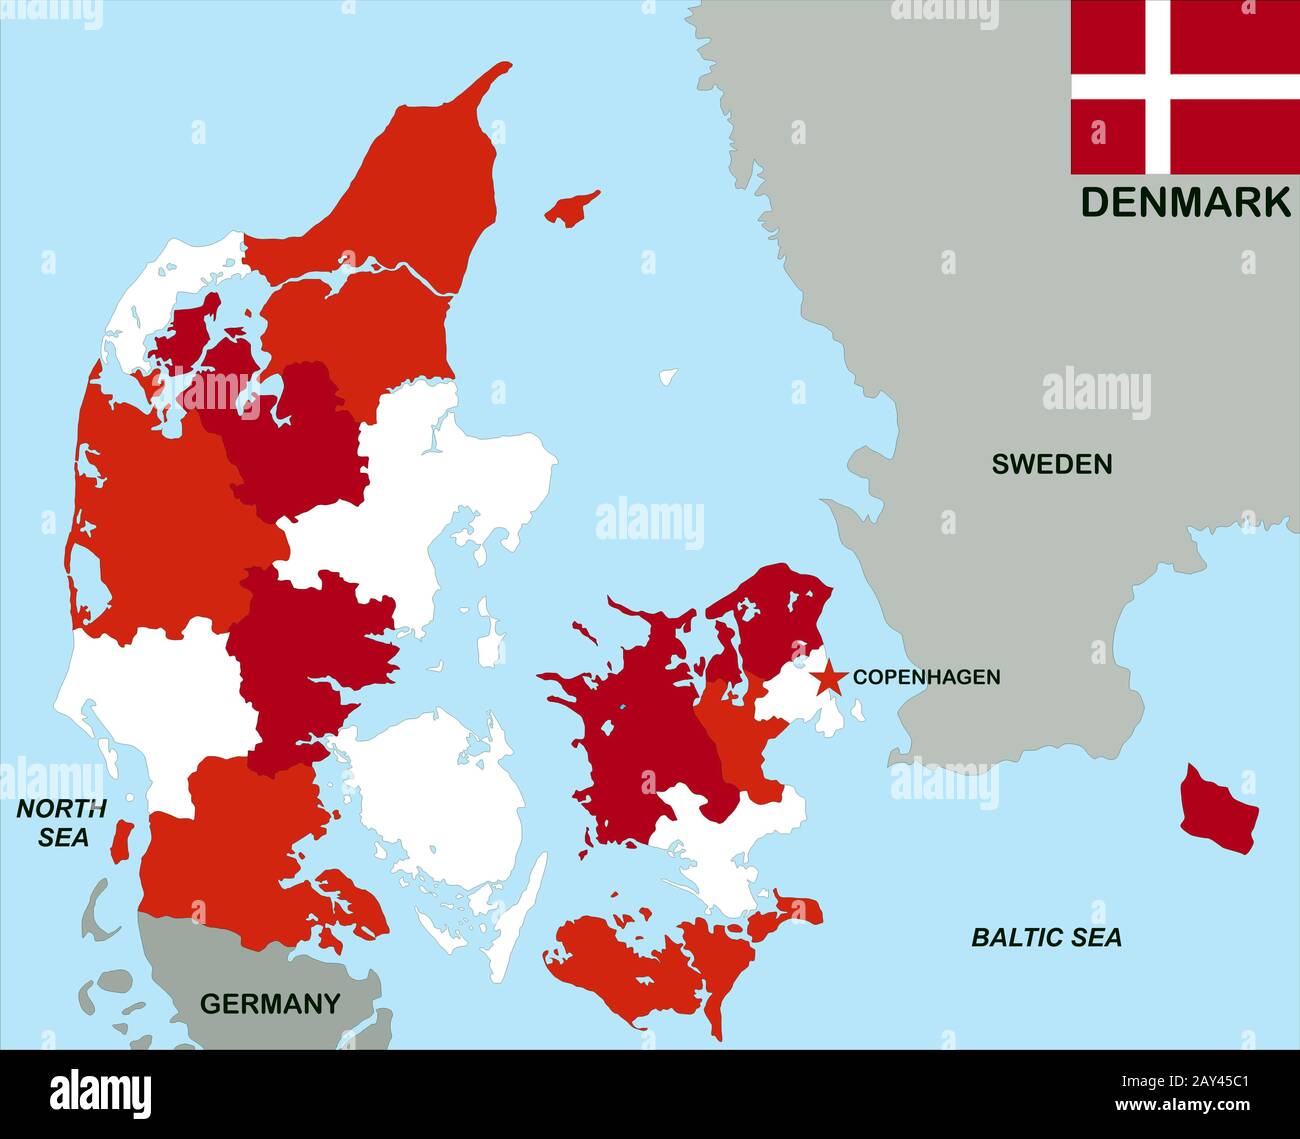 denmark political map Stock Photo